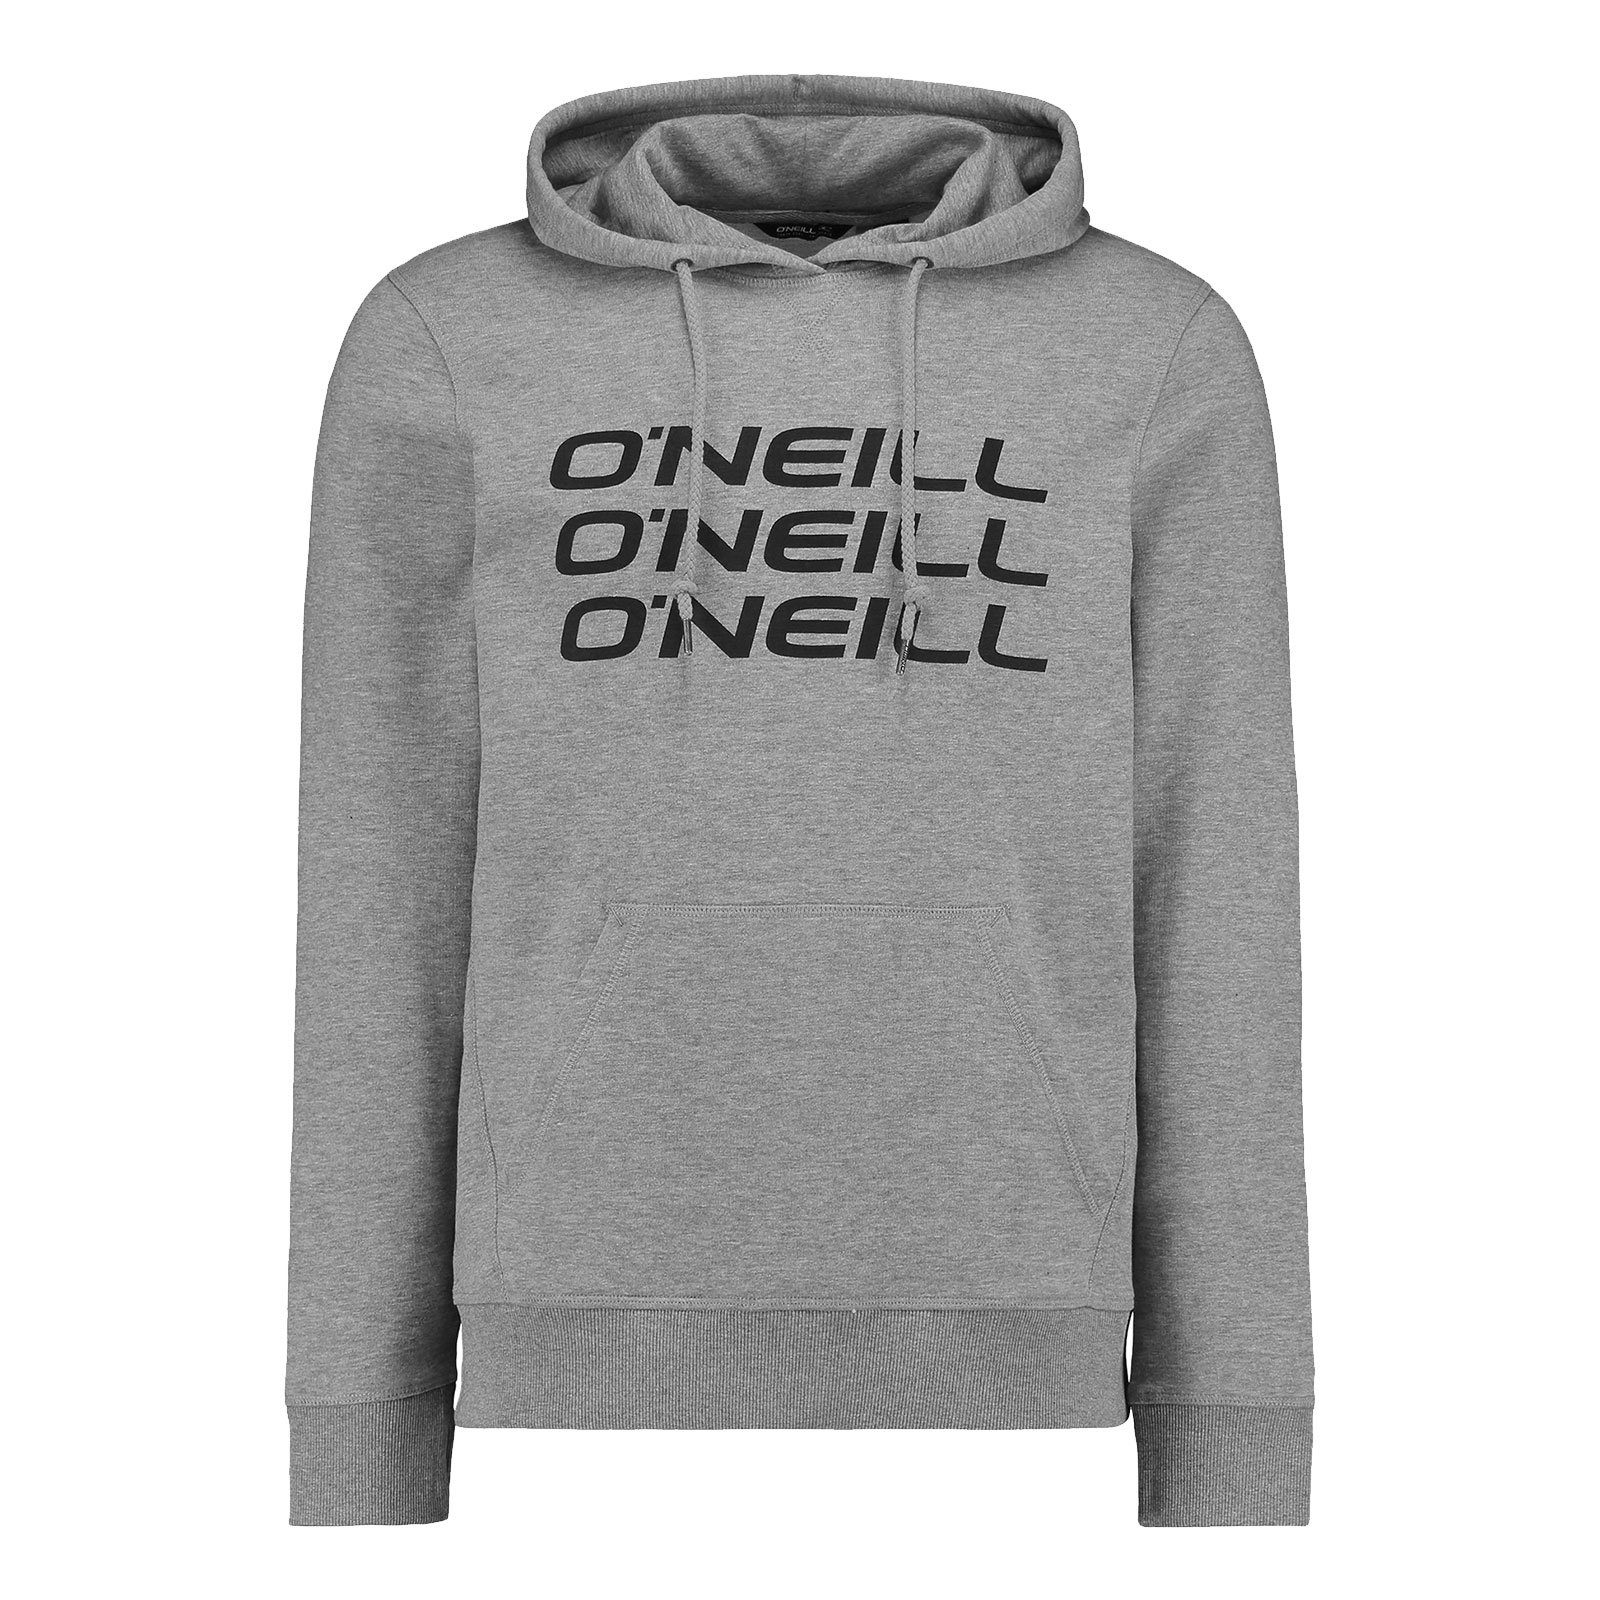 Tripple O'Neill silver Kapuzensweatshirt mit Markenprint Brust Hoodie dreifachem melee Herren der 8001 auf Stack